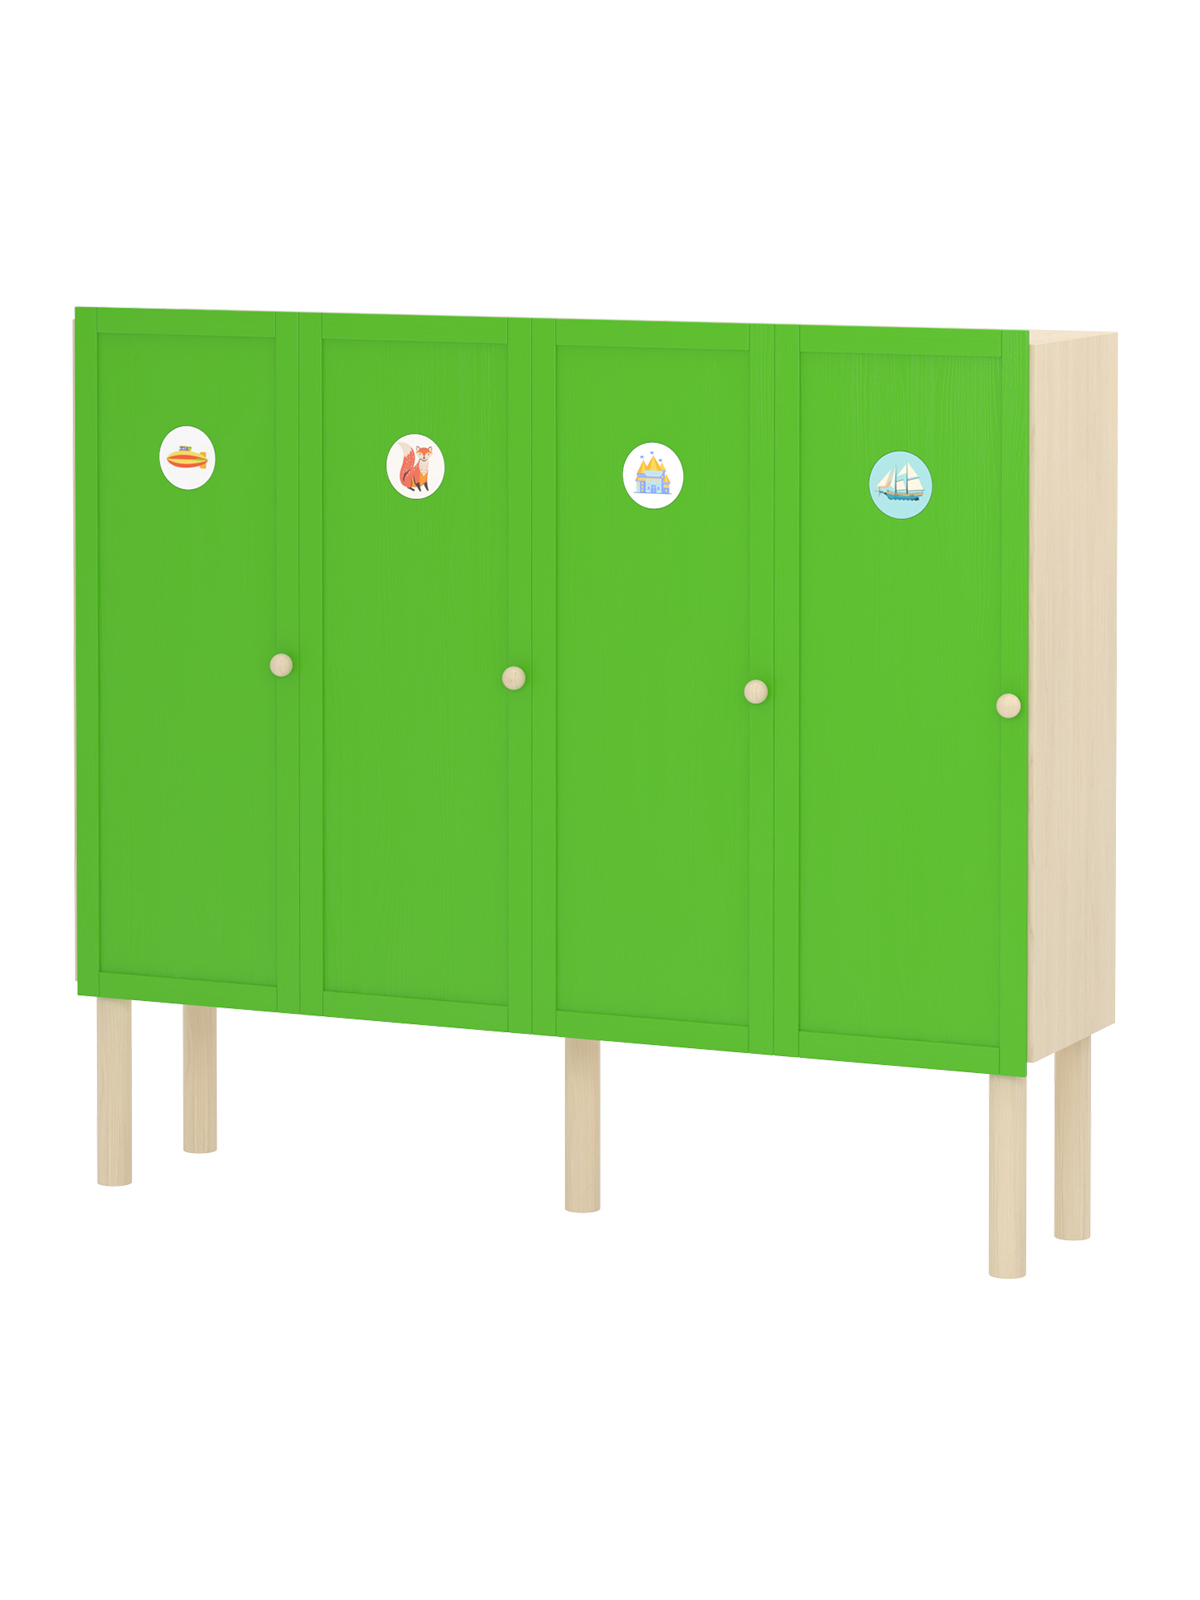 Шкаф для раздевалки 4 секции / зелёный купить по выгодной цене, артикул 8617 - Фабрика «Росигрушка»